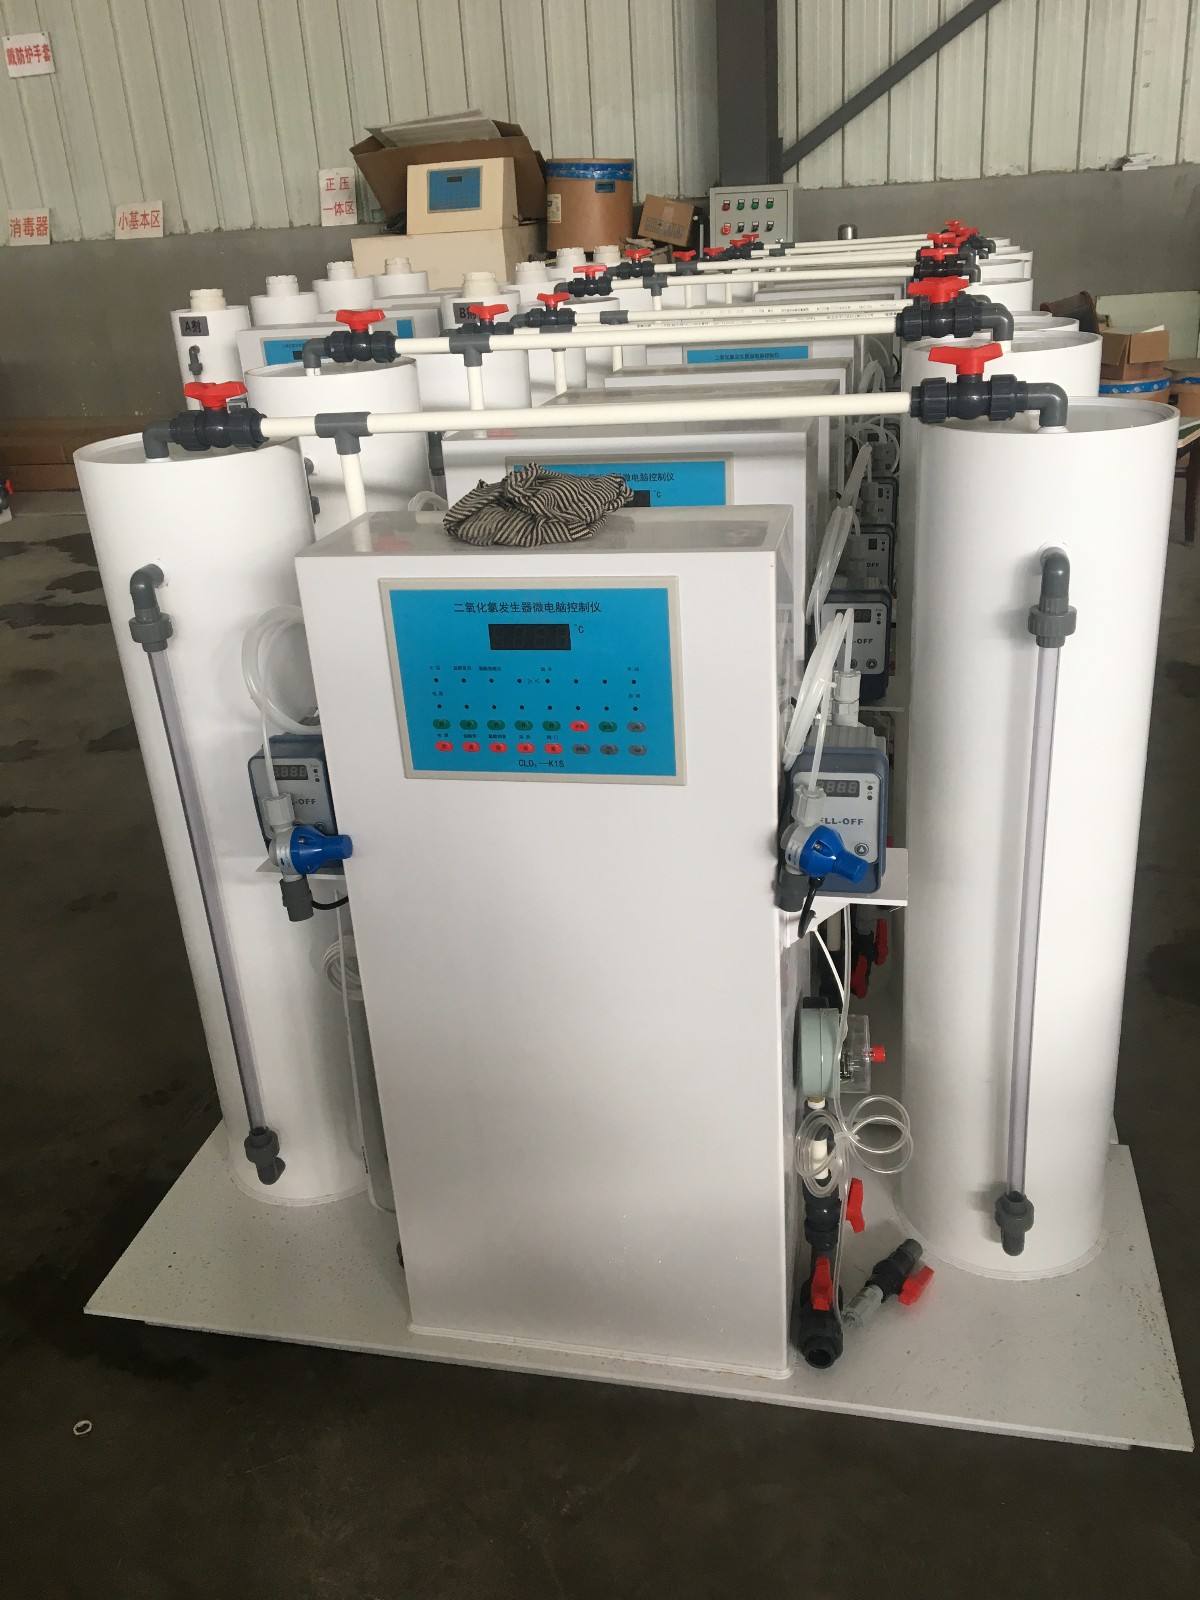 上海微型二手净化水处理设备回收_大型二手化工设备-郓城万事顺机械设备商贸有限公司